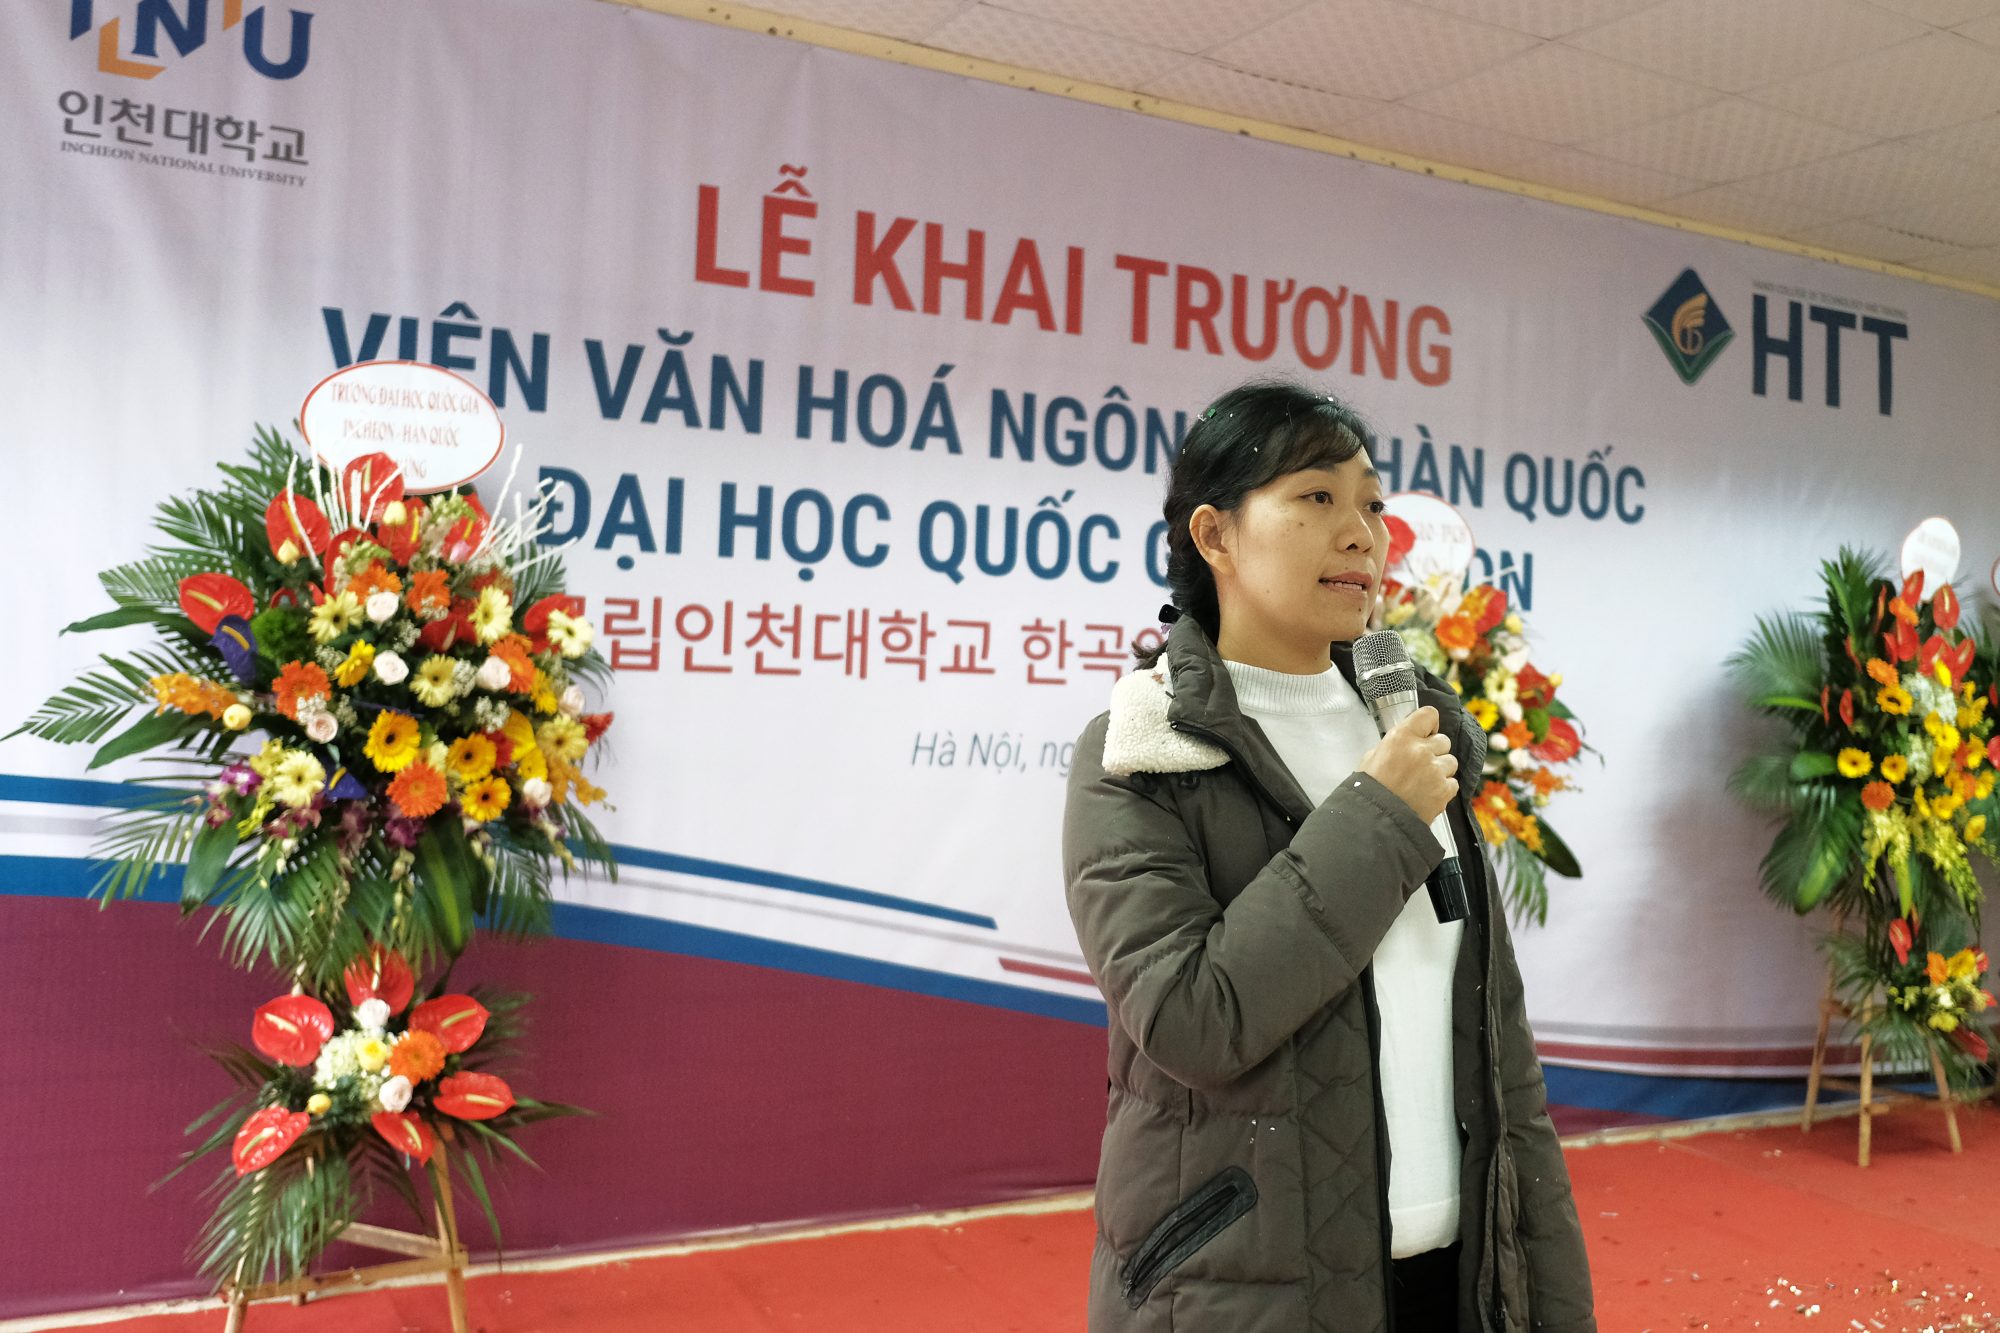 TS. Đoàn Thị Thu Hương - Phó Hiệu trưởng phụ trách đối ngoại phát biểu tại buổi lễ